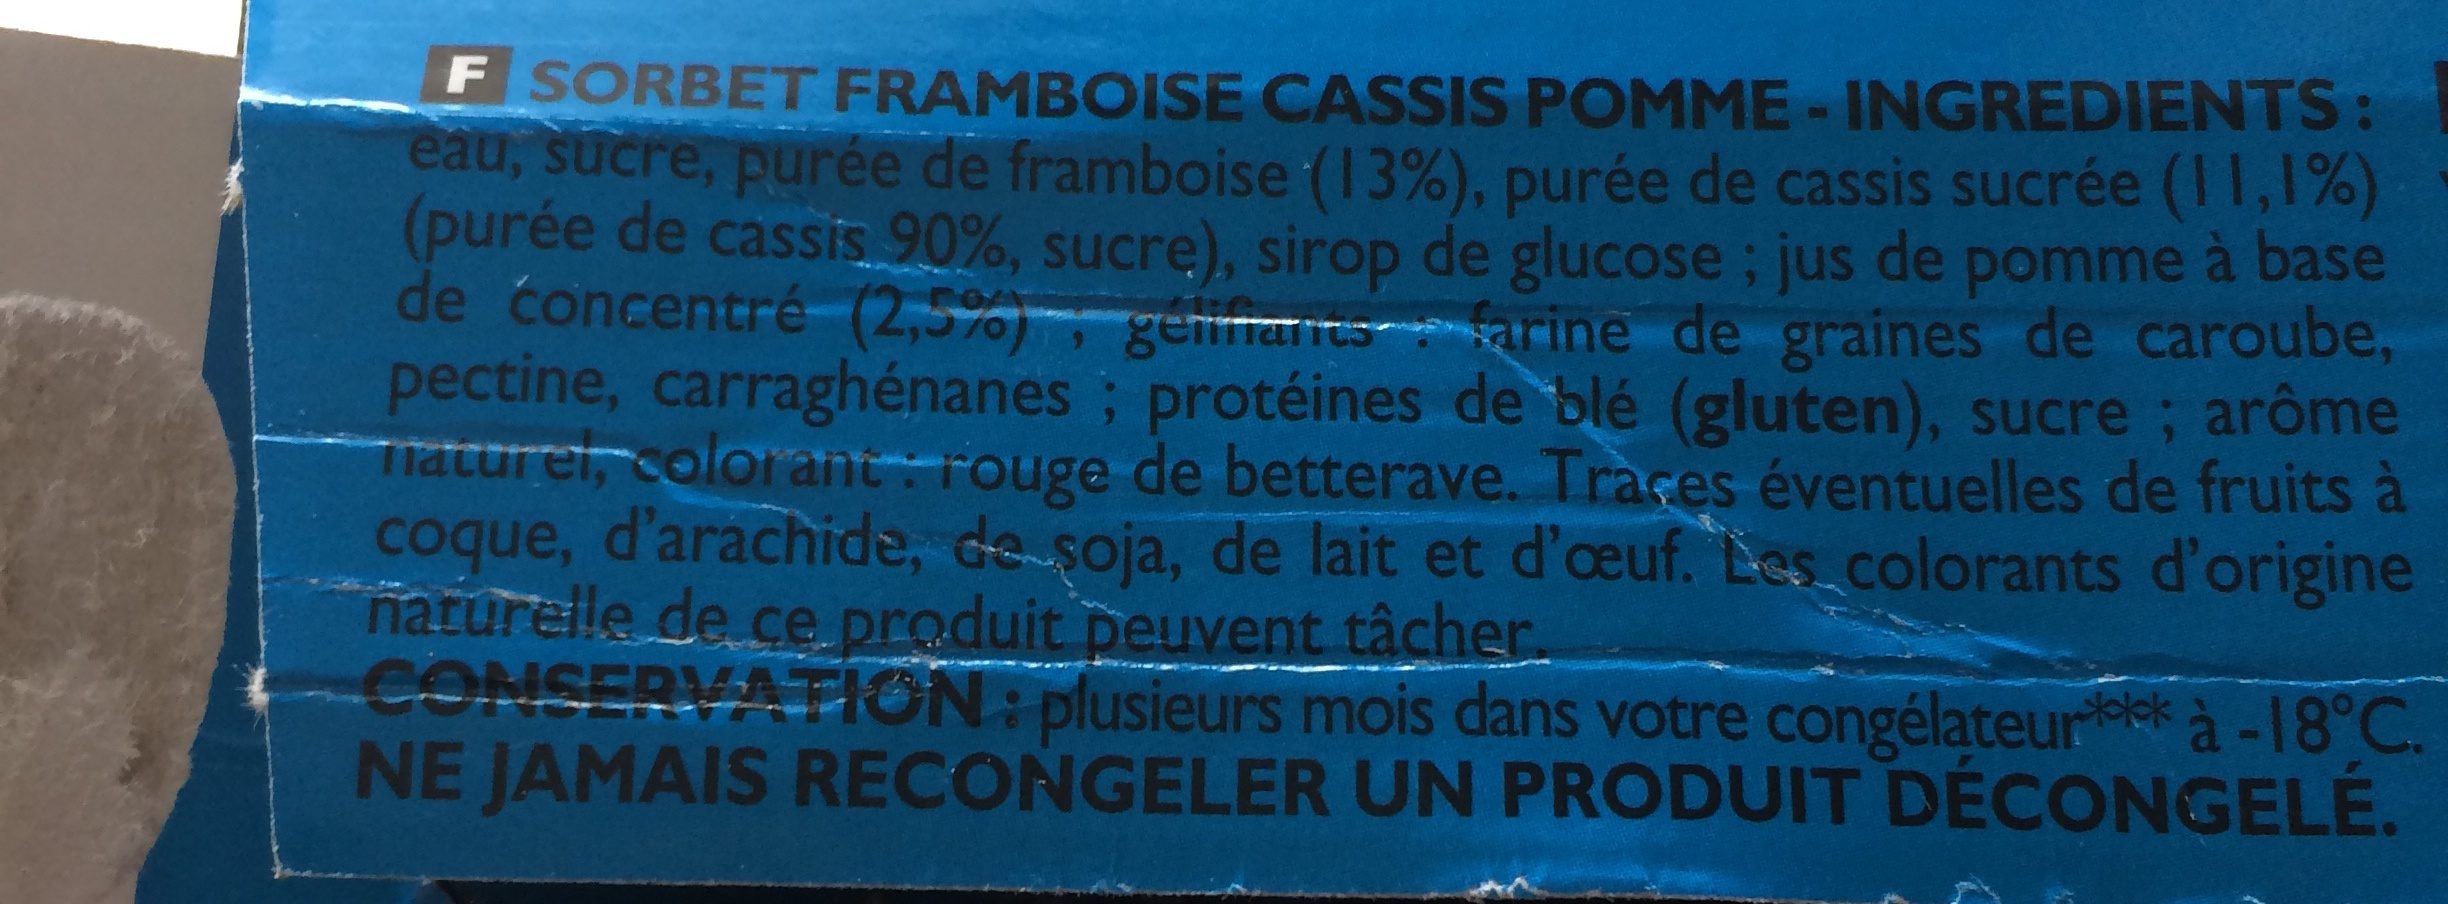 Sorbet Pomme Cassis Framboise Oasis - Ingredients - fr